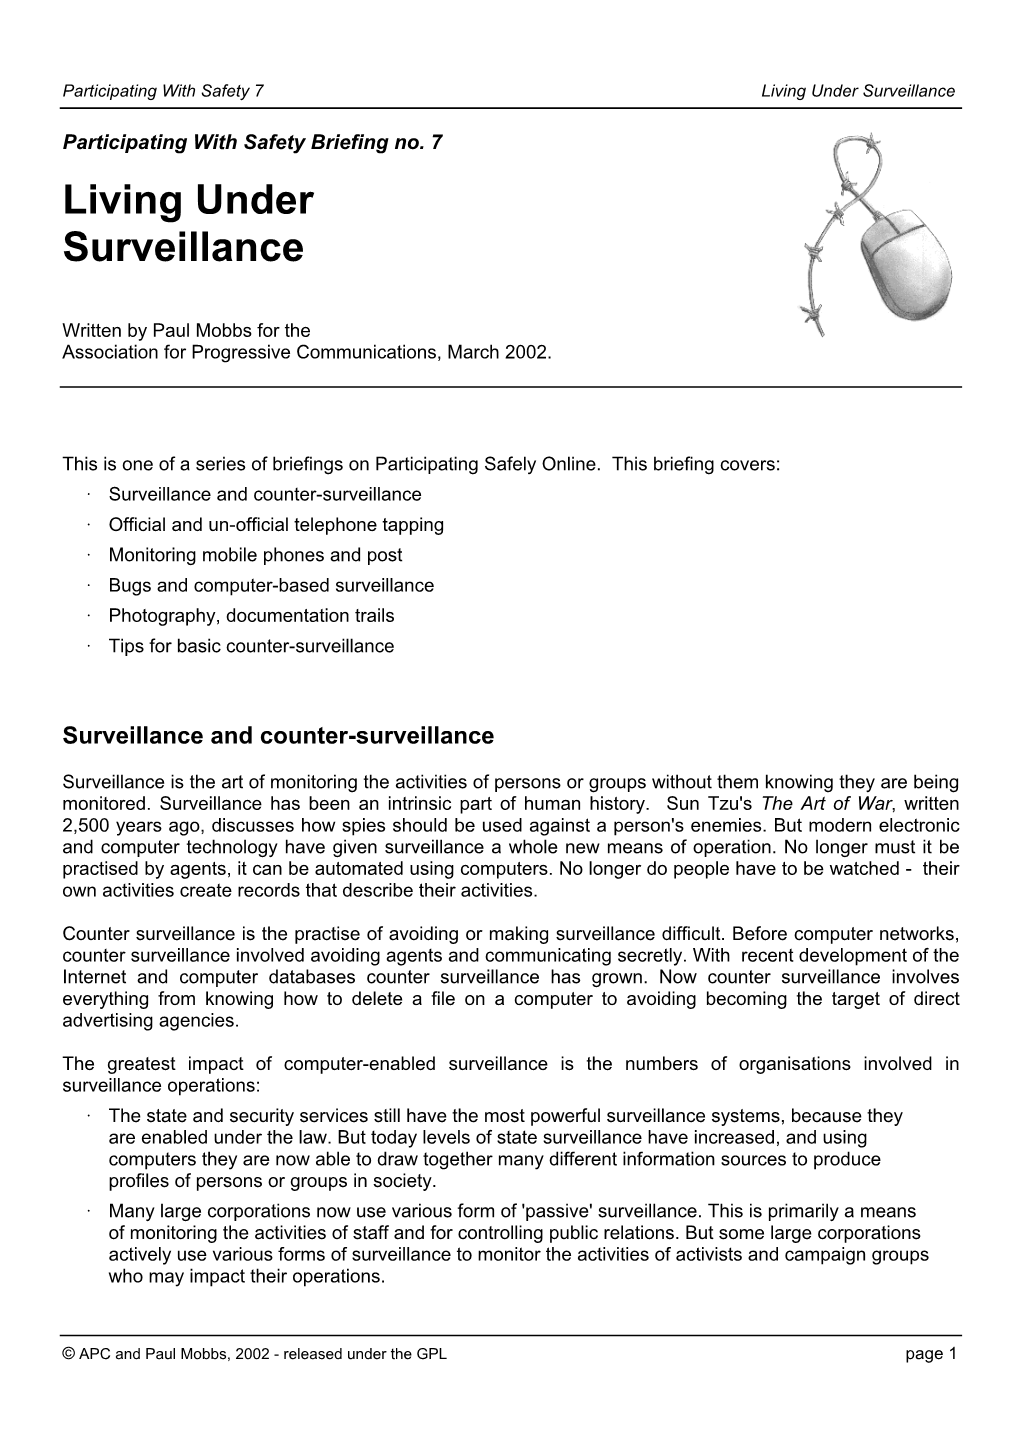 Living Under Surveillance